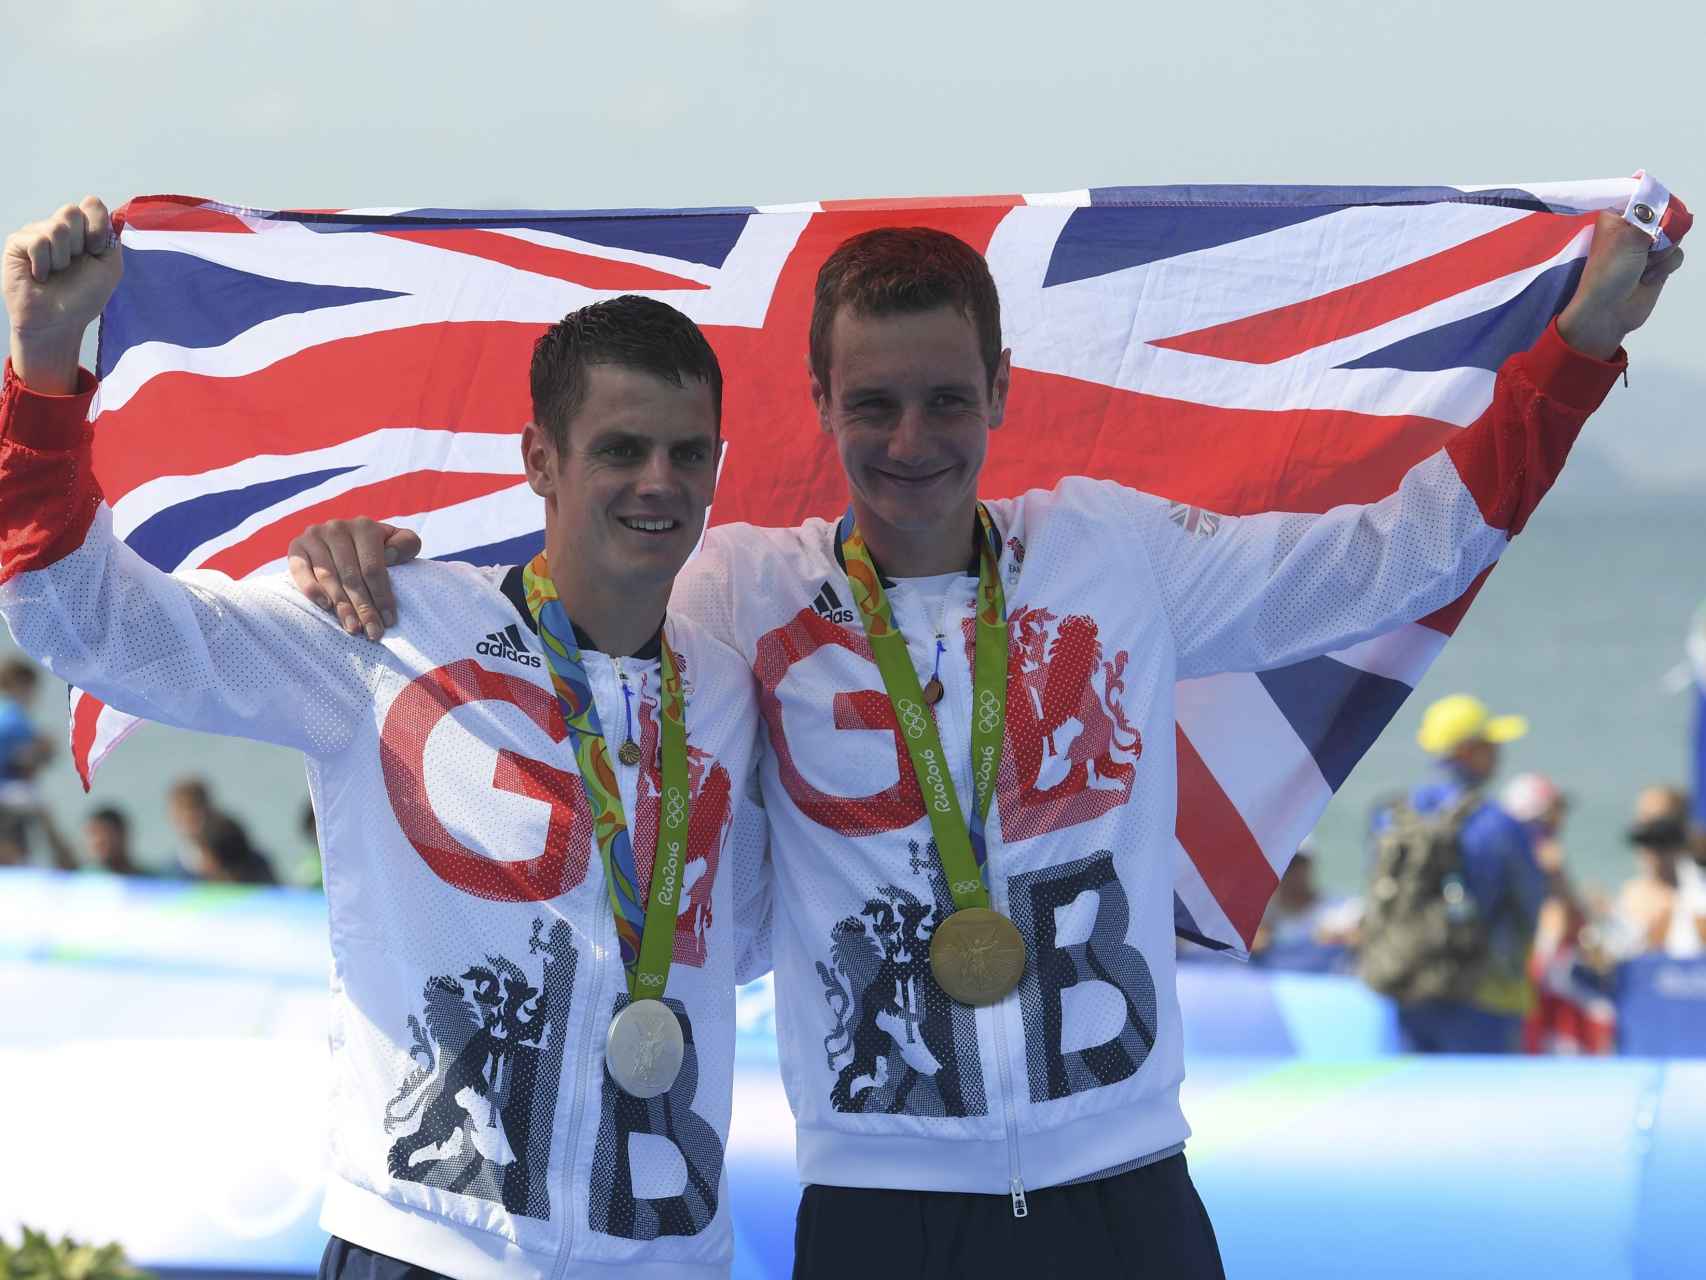 Los hermanos Brownlee celebran sus medallas con la bandera británica.